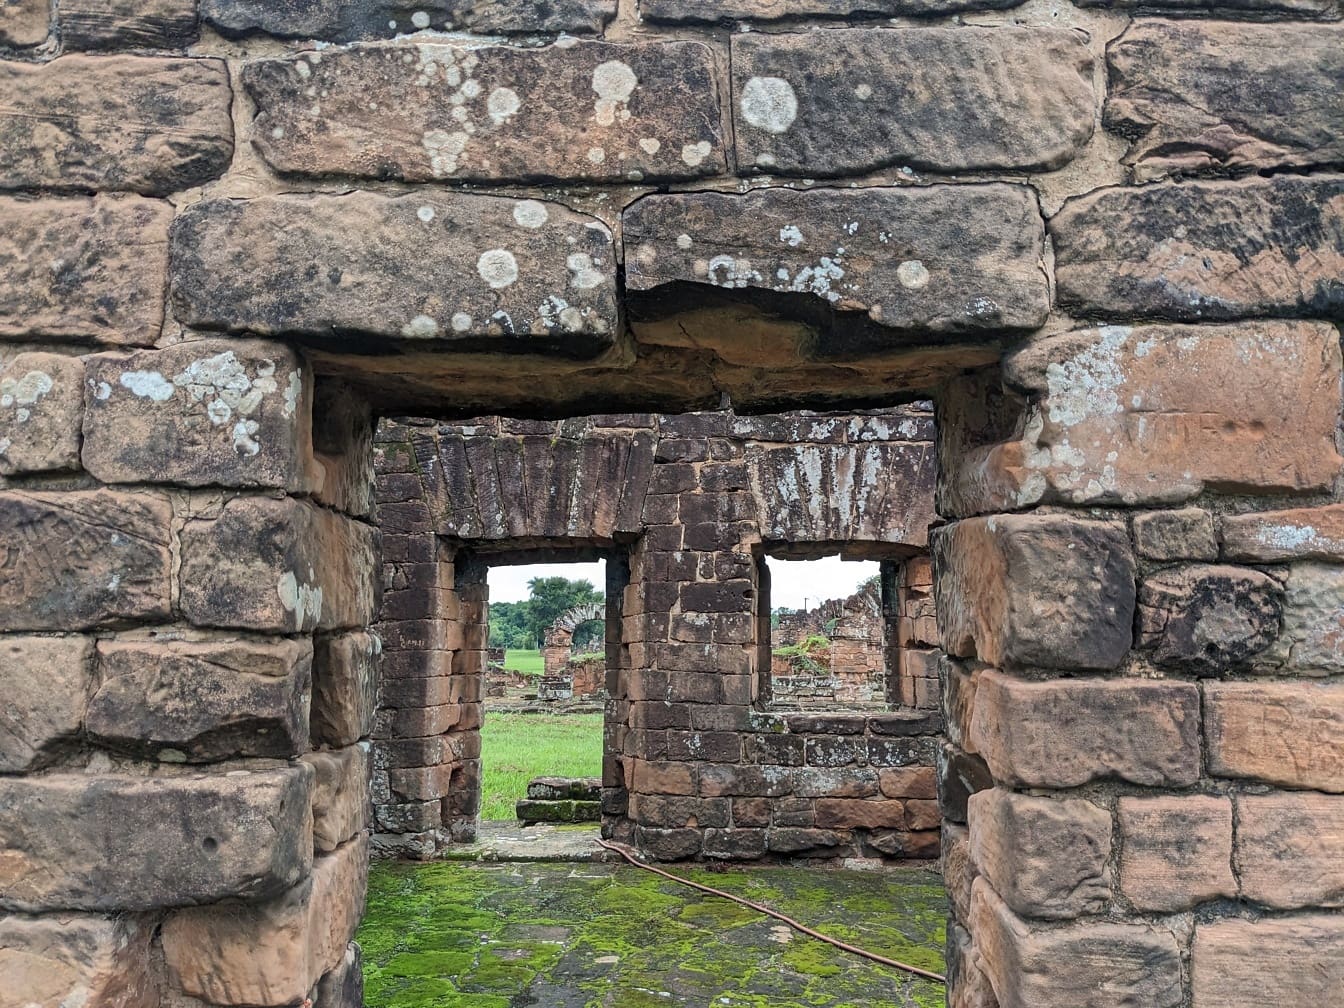 Středověká zřícenina s dveřmi u cihlové zdi na archeologickém nalezišti v Paraguayi